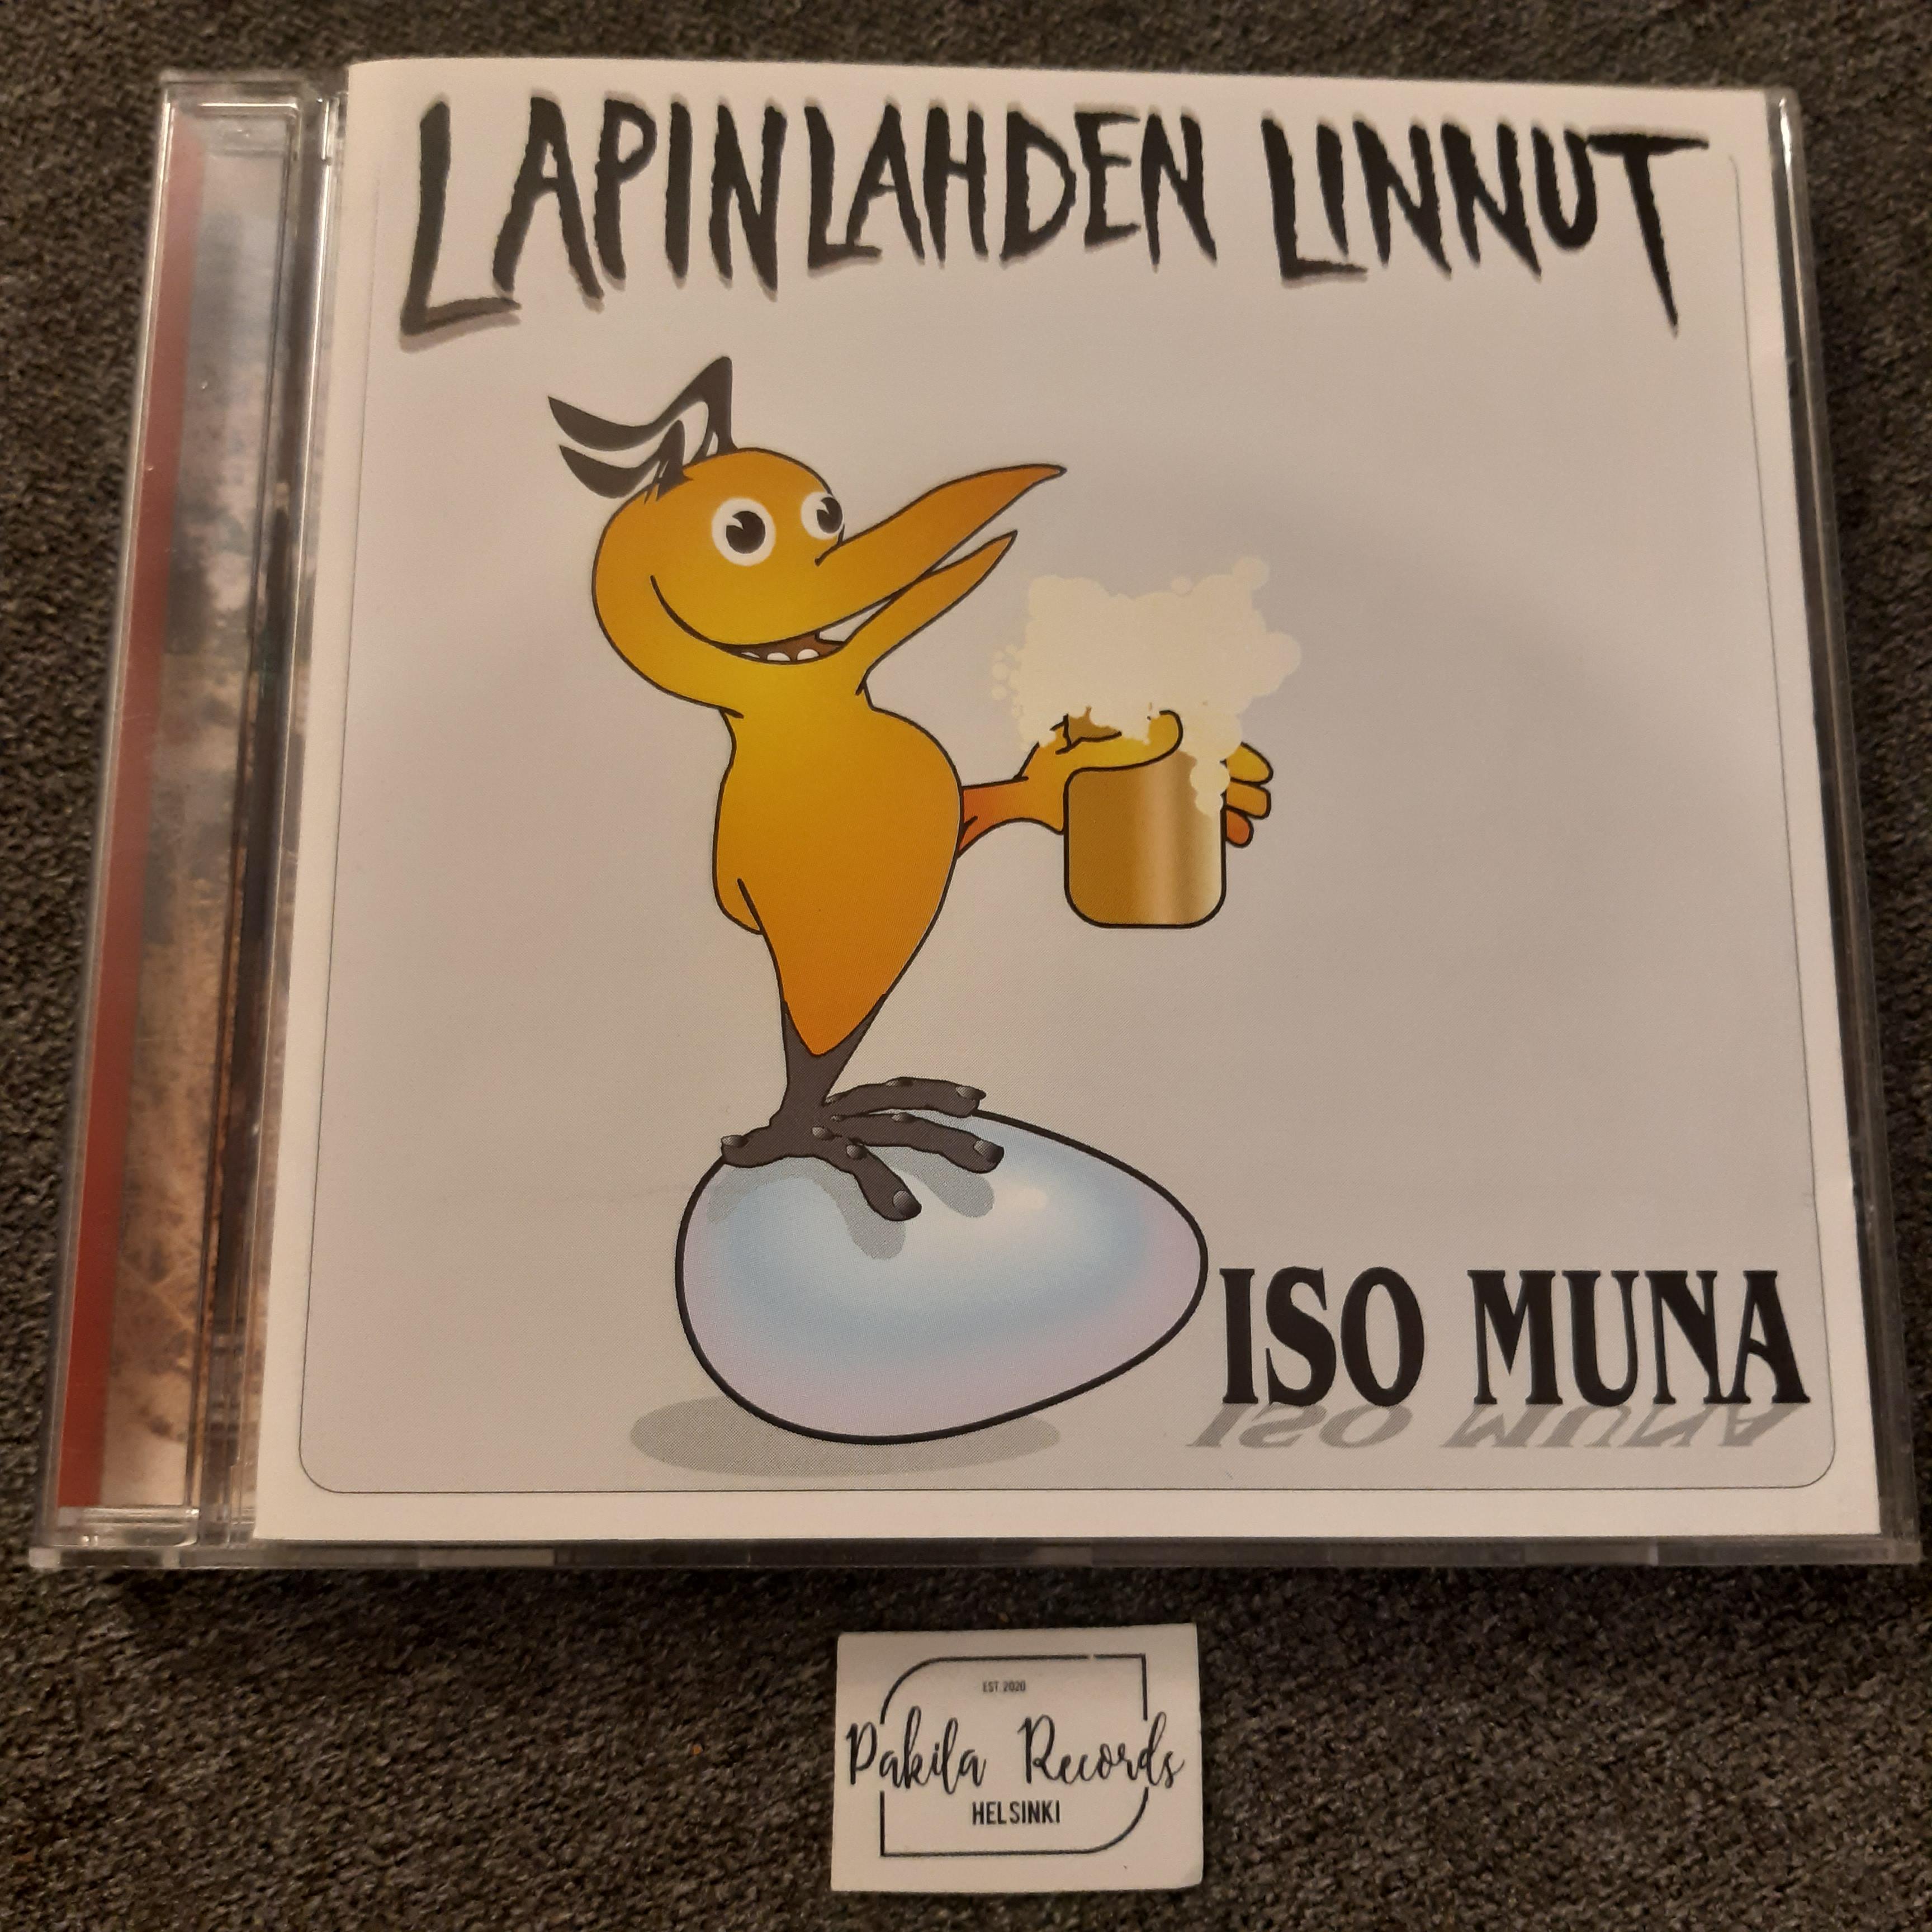 Lapinlahden Linnut - Iso muna - CD (käytetty)